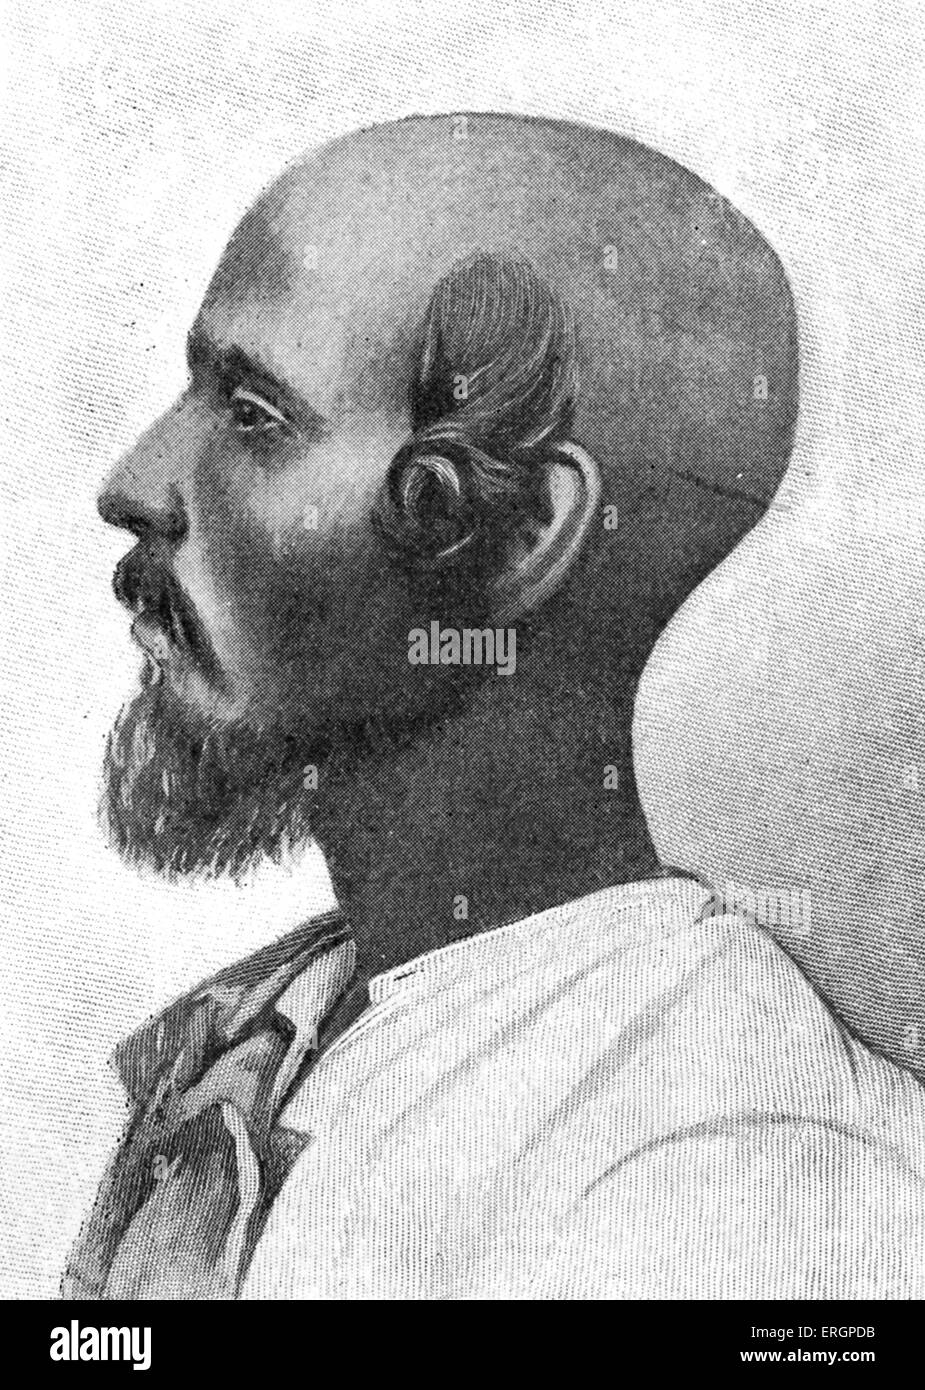 Cochin jüdisch Gemeinschaft, Indien.  Der Mensch als "Schwarzer Jude" bezeichnet. Nach der Fotografie im 19. Jahrhundert Quelle. Stockfoto